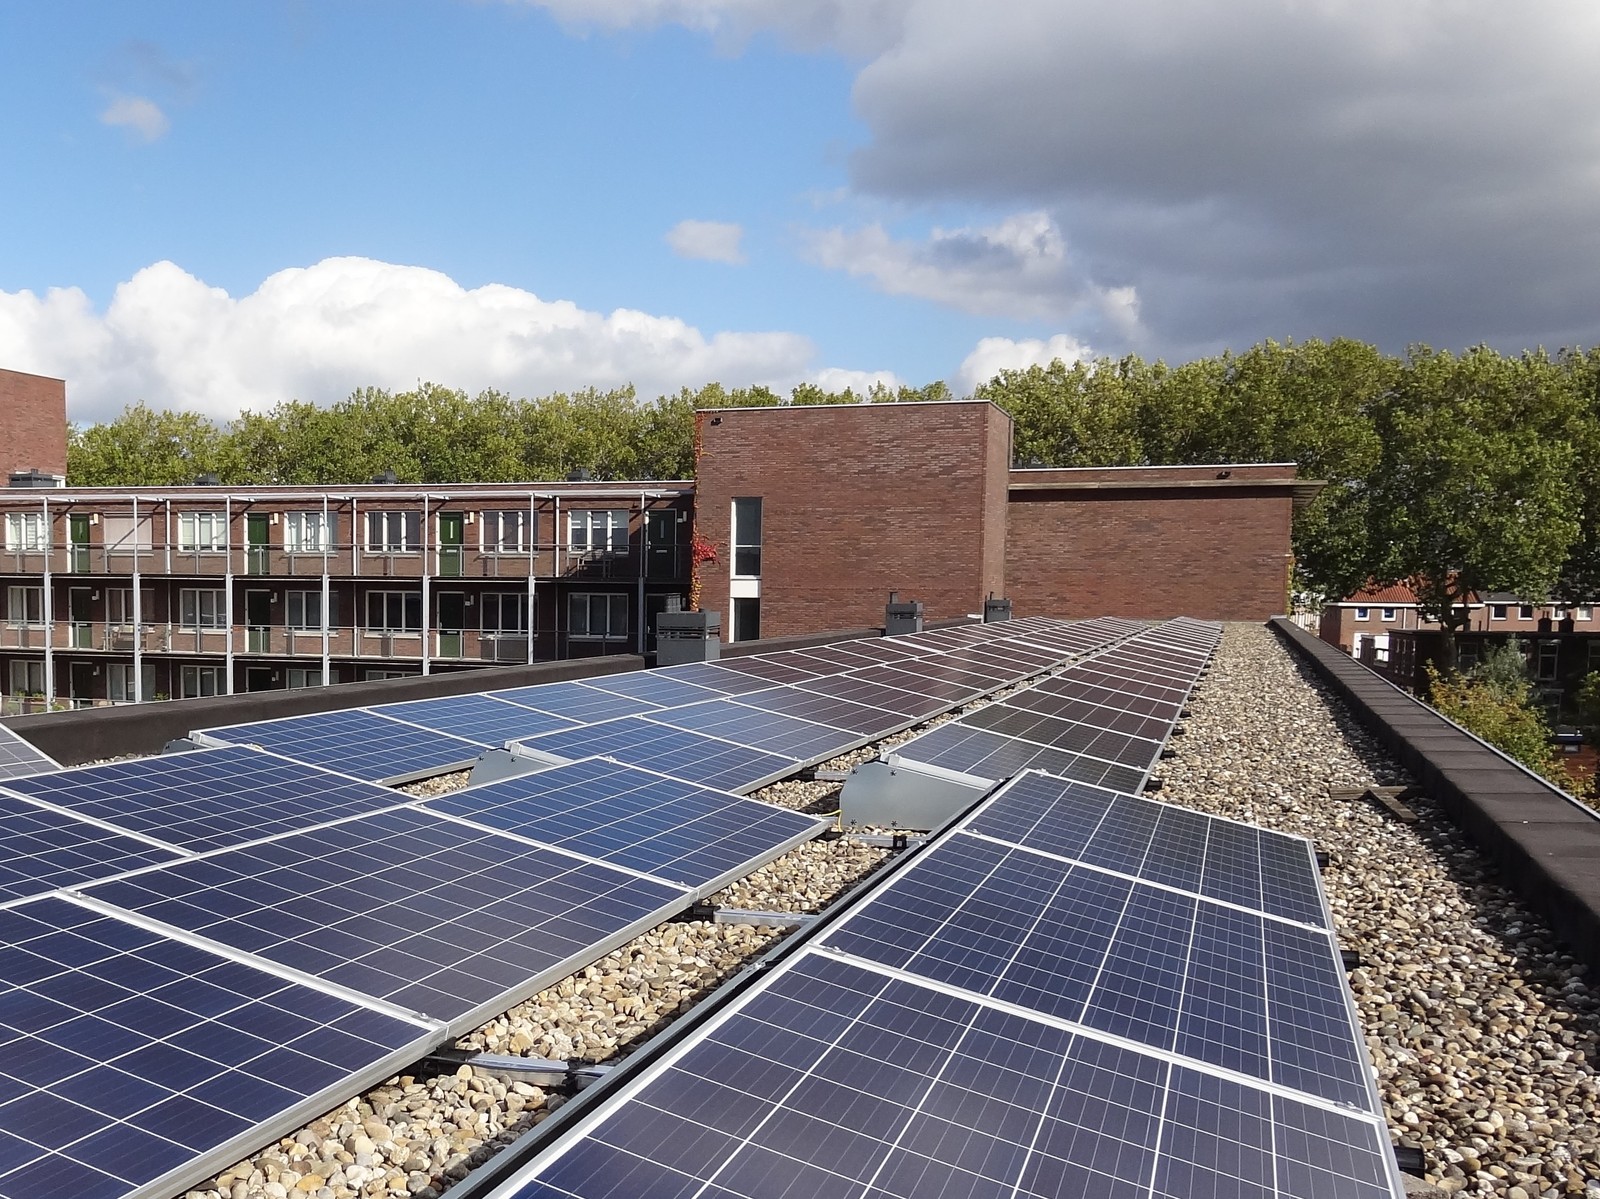 Solar Smart Grid-installatie verdeelt stroom flexibel onder bewoners